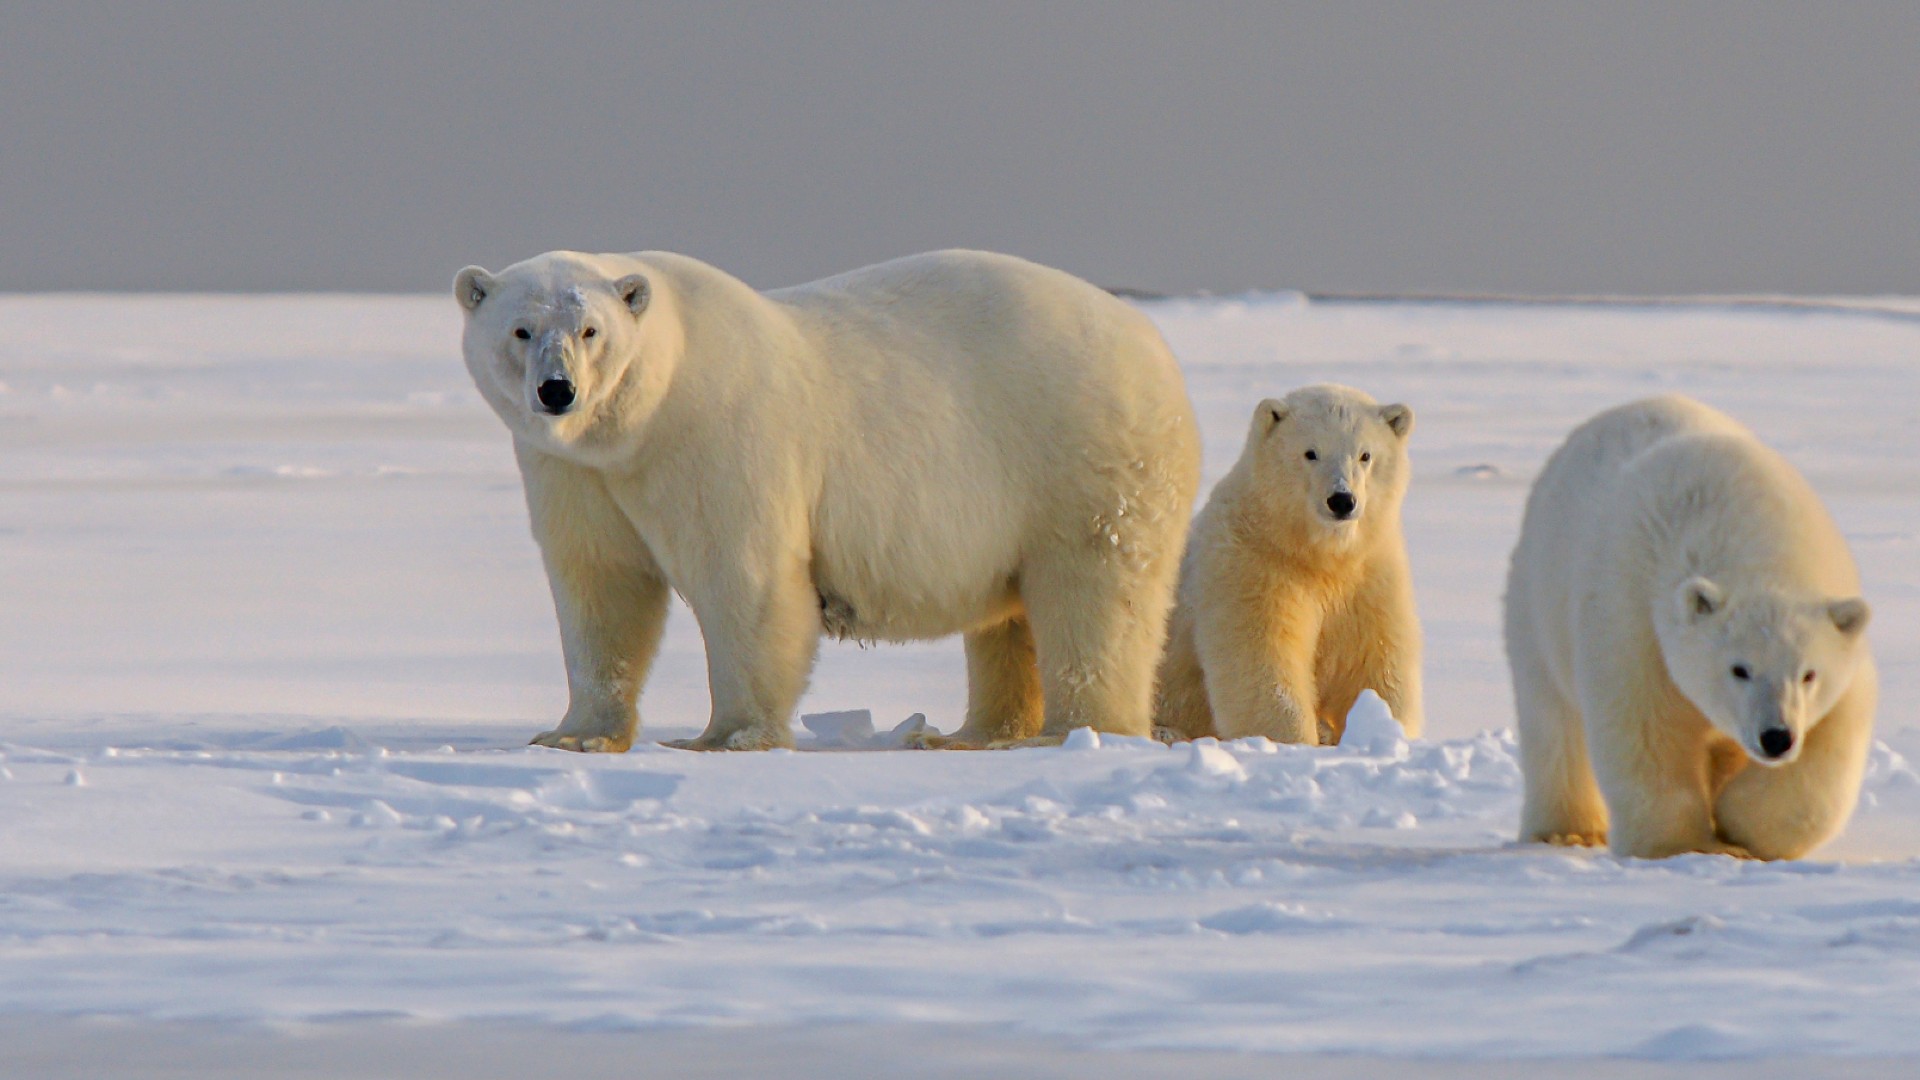 A group of three polar bears on the ice